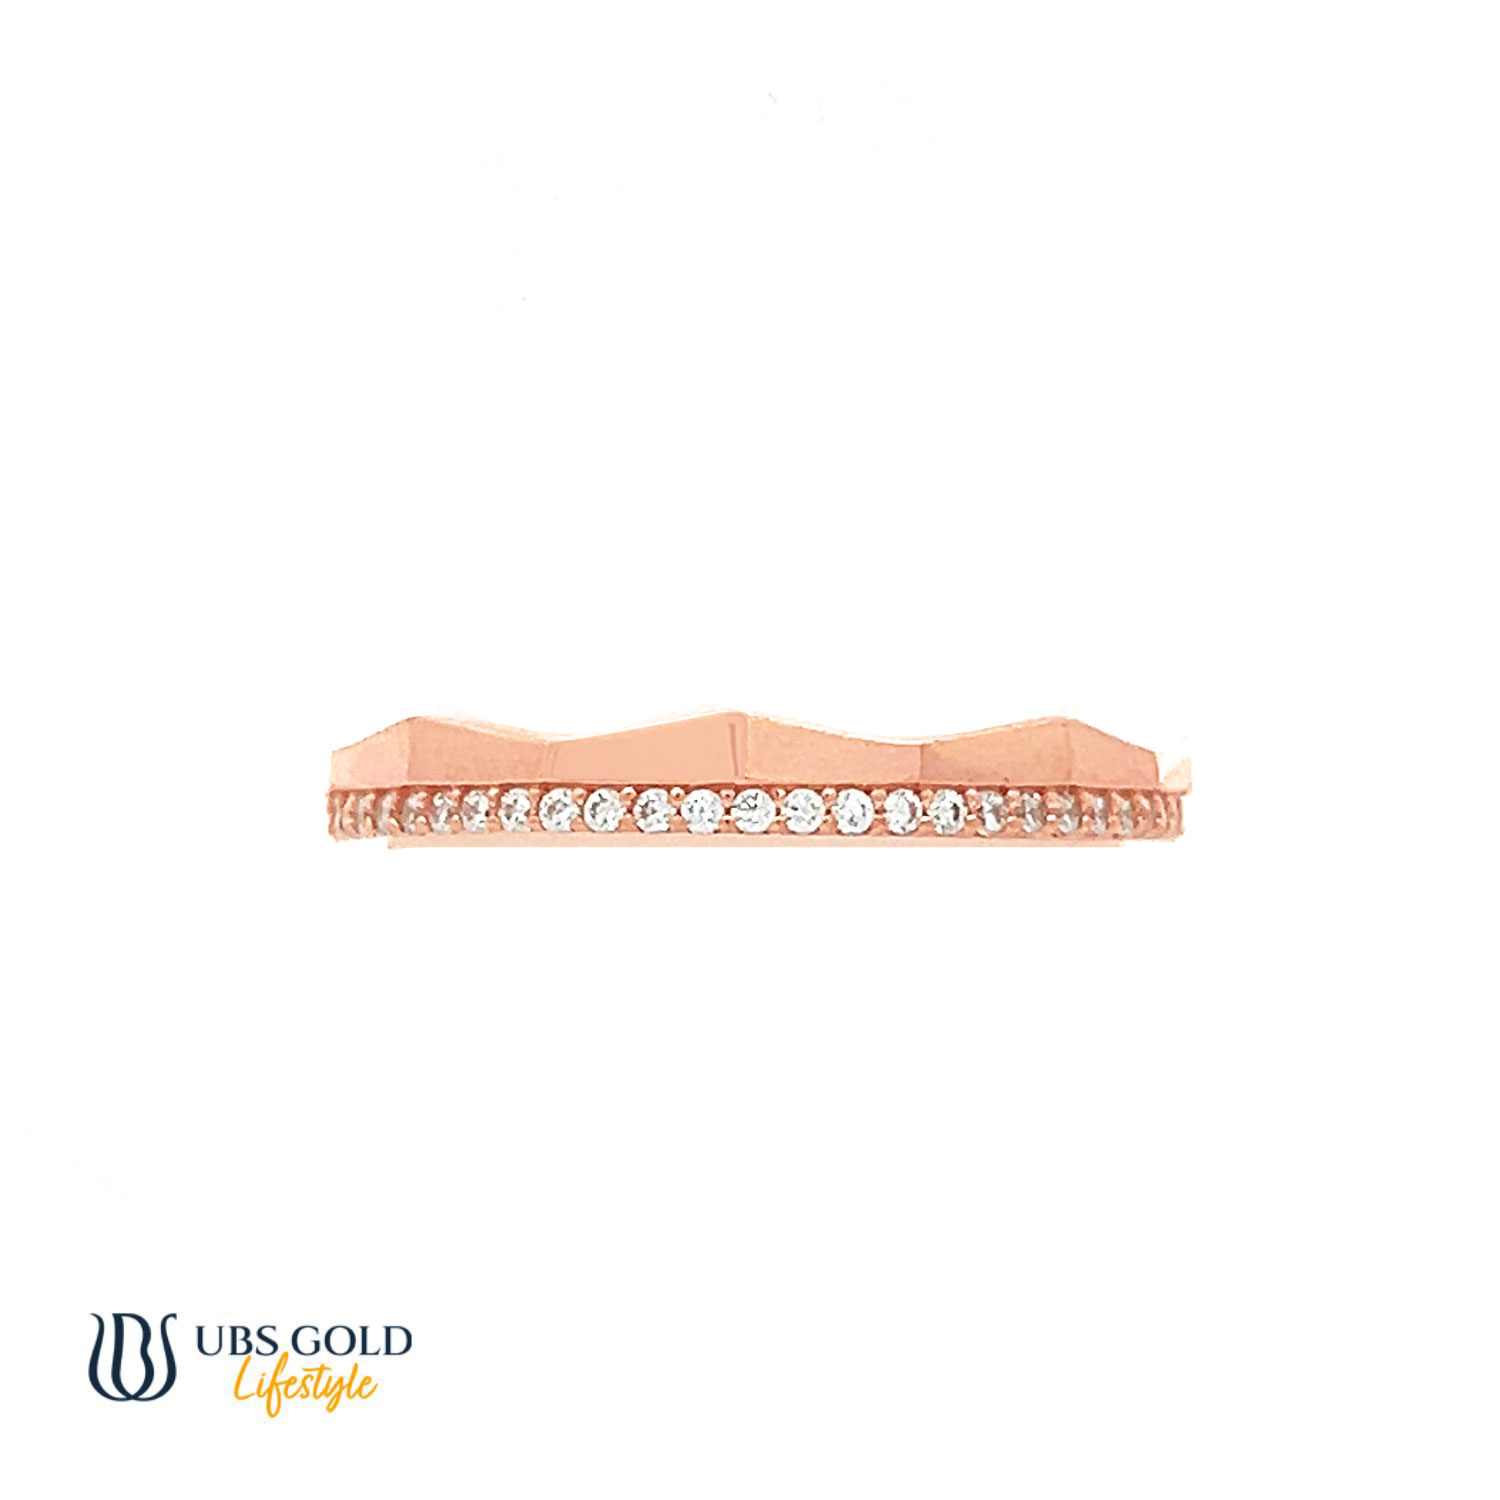 UBS Gold Cincin Emas - Cc16891 - 17K